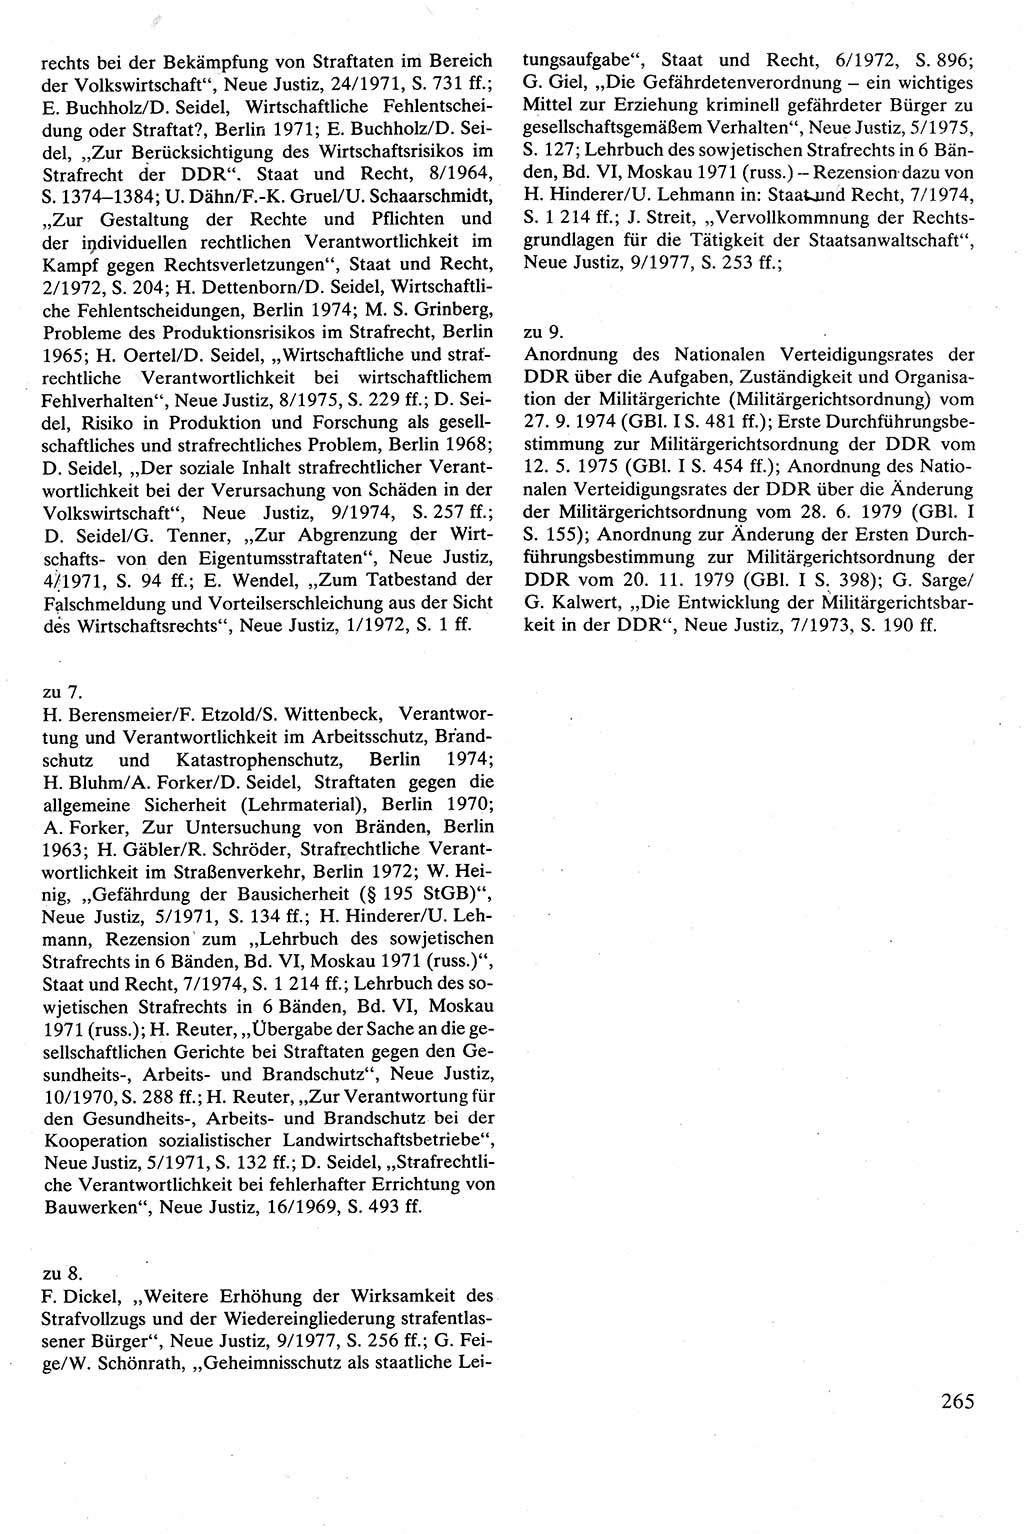 Strafrecht [Deutsche Demokratische Republik (DDR)], Besonderer Teil, Lehrbuch 1981, Seite 265 (Strafr. DDR BT Lb. 1981, S. 265)